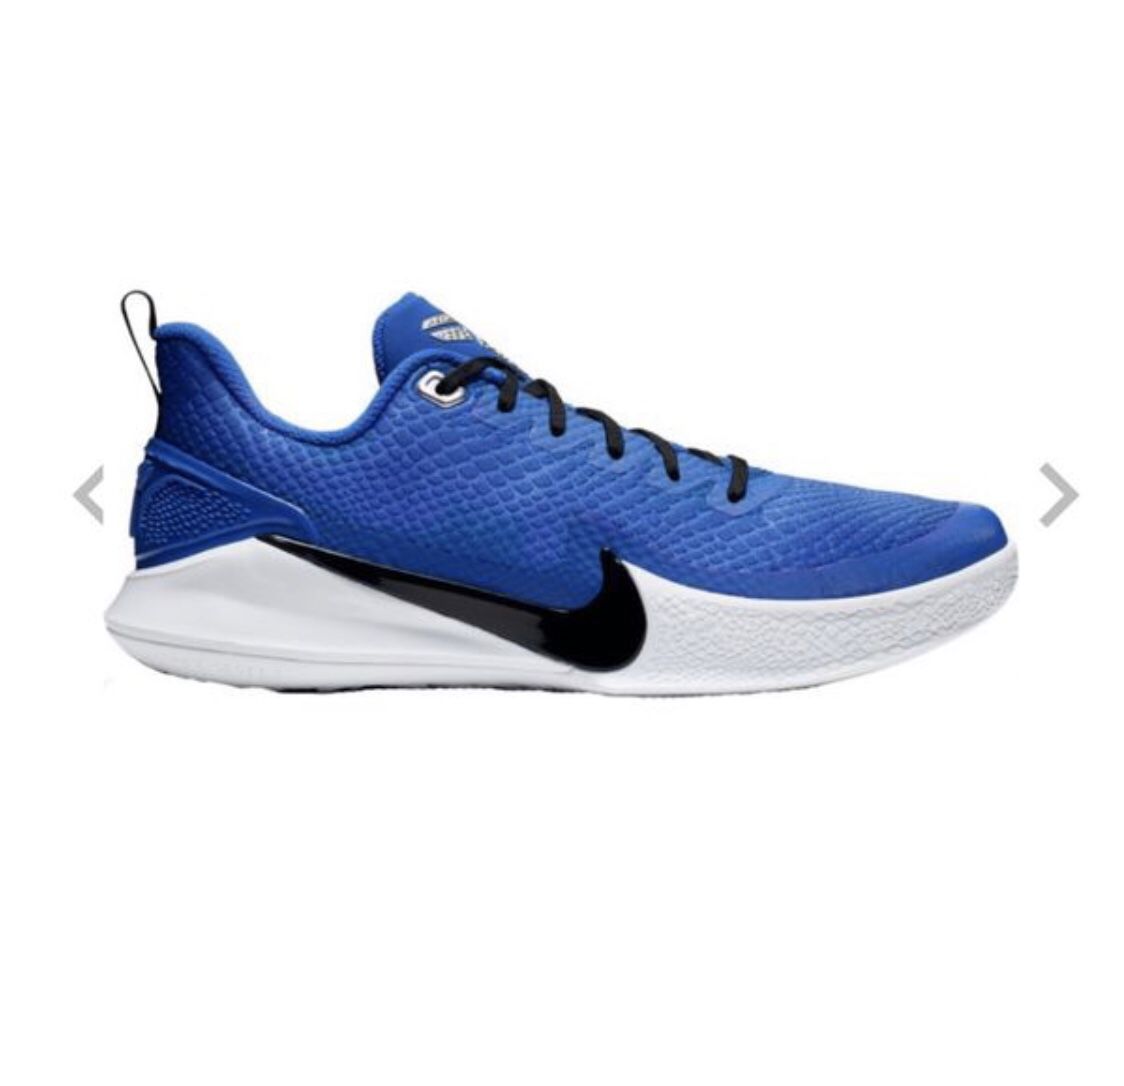 Kobe Bryant Mamba Focus Nike shoes Size 8.5